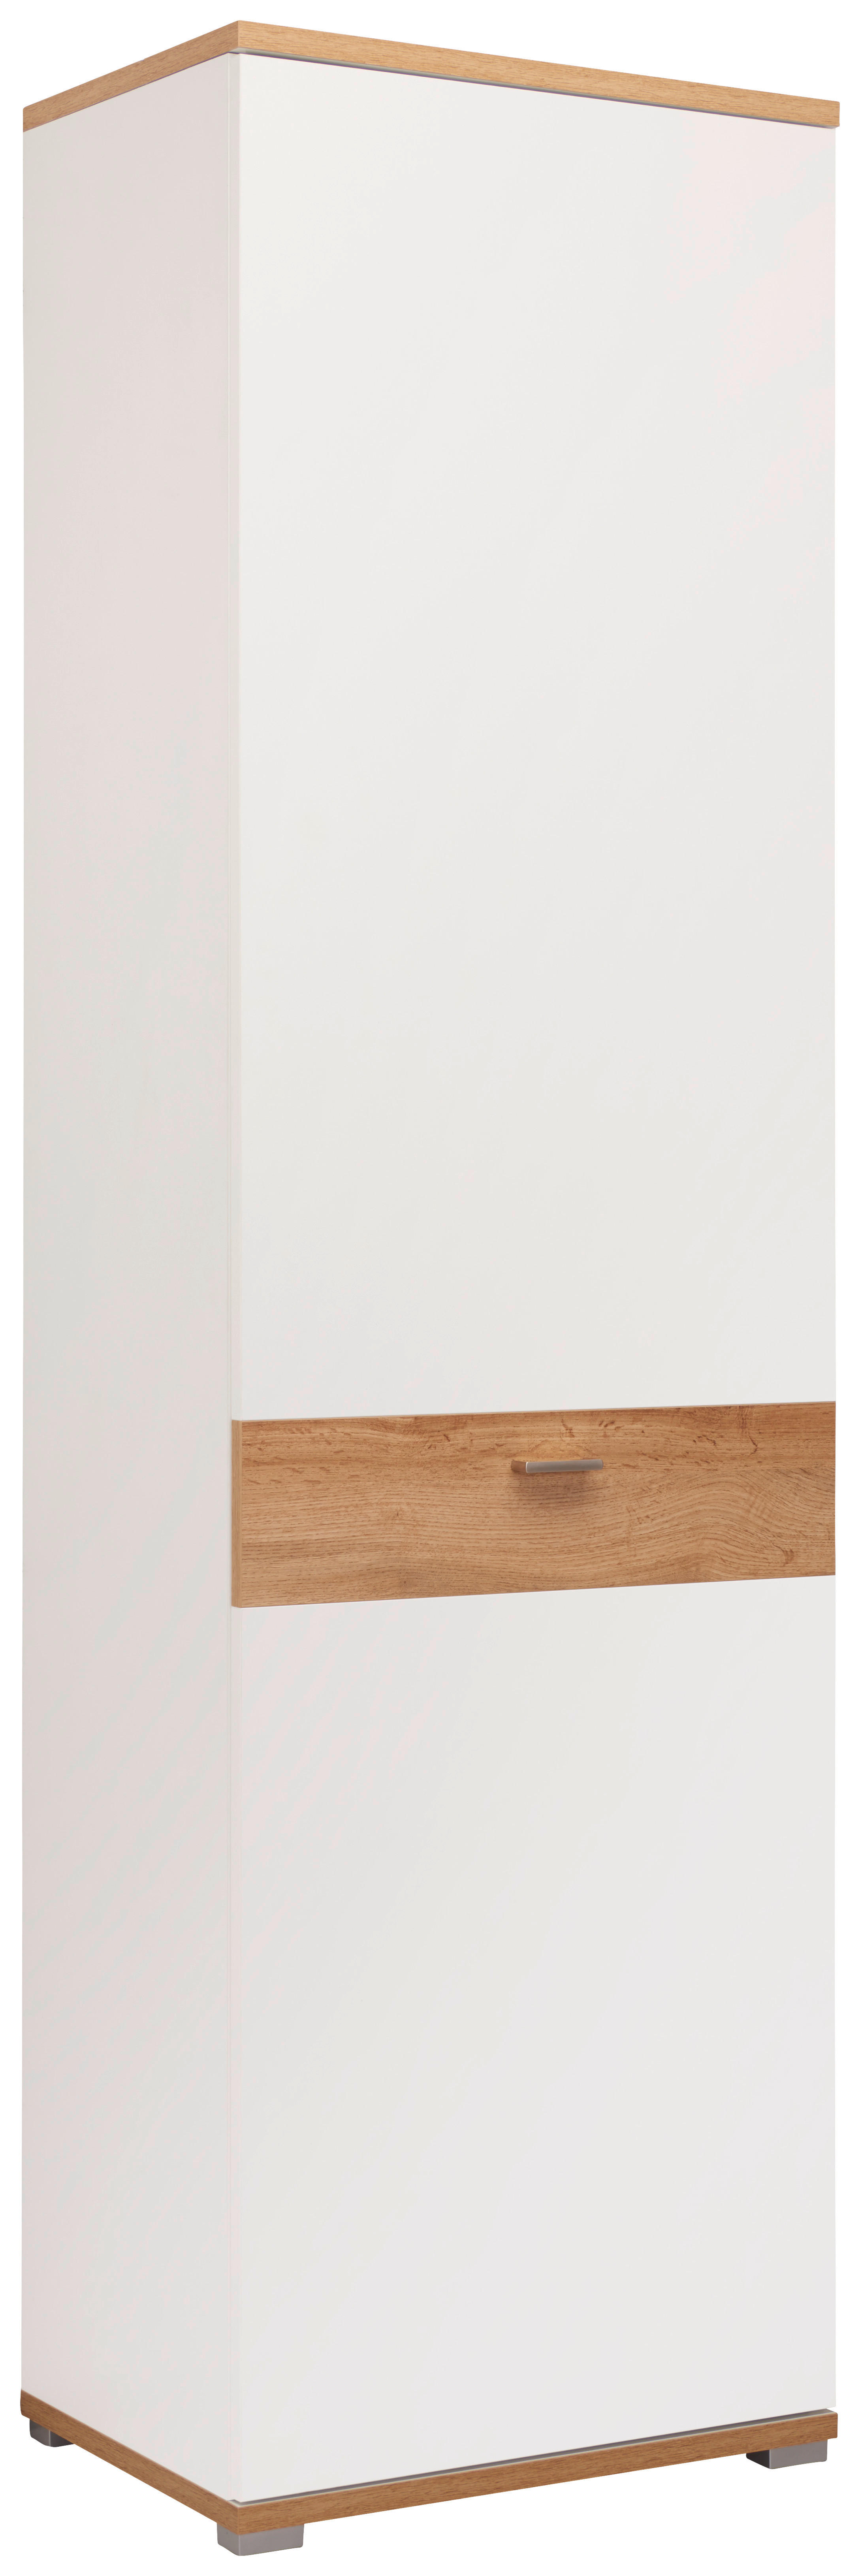 PREDSIEŇOVÁ SKRIŇA, biela, farby duba, 58/205/40 cm - farby duba/biela, Design, kov/kompozitné drevo (58/205/40cm) - Carryhome